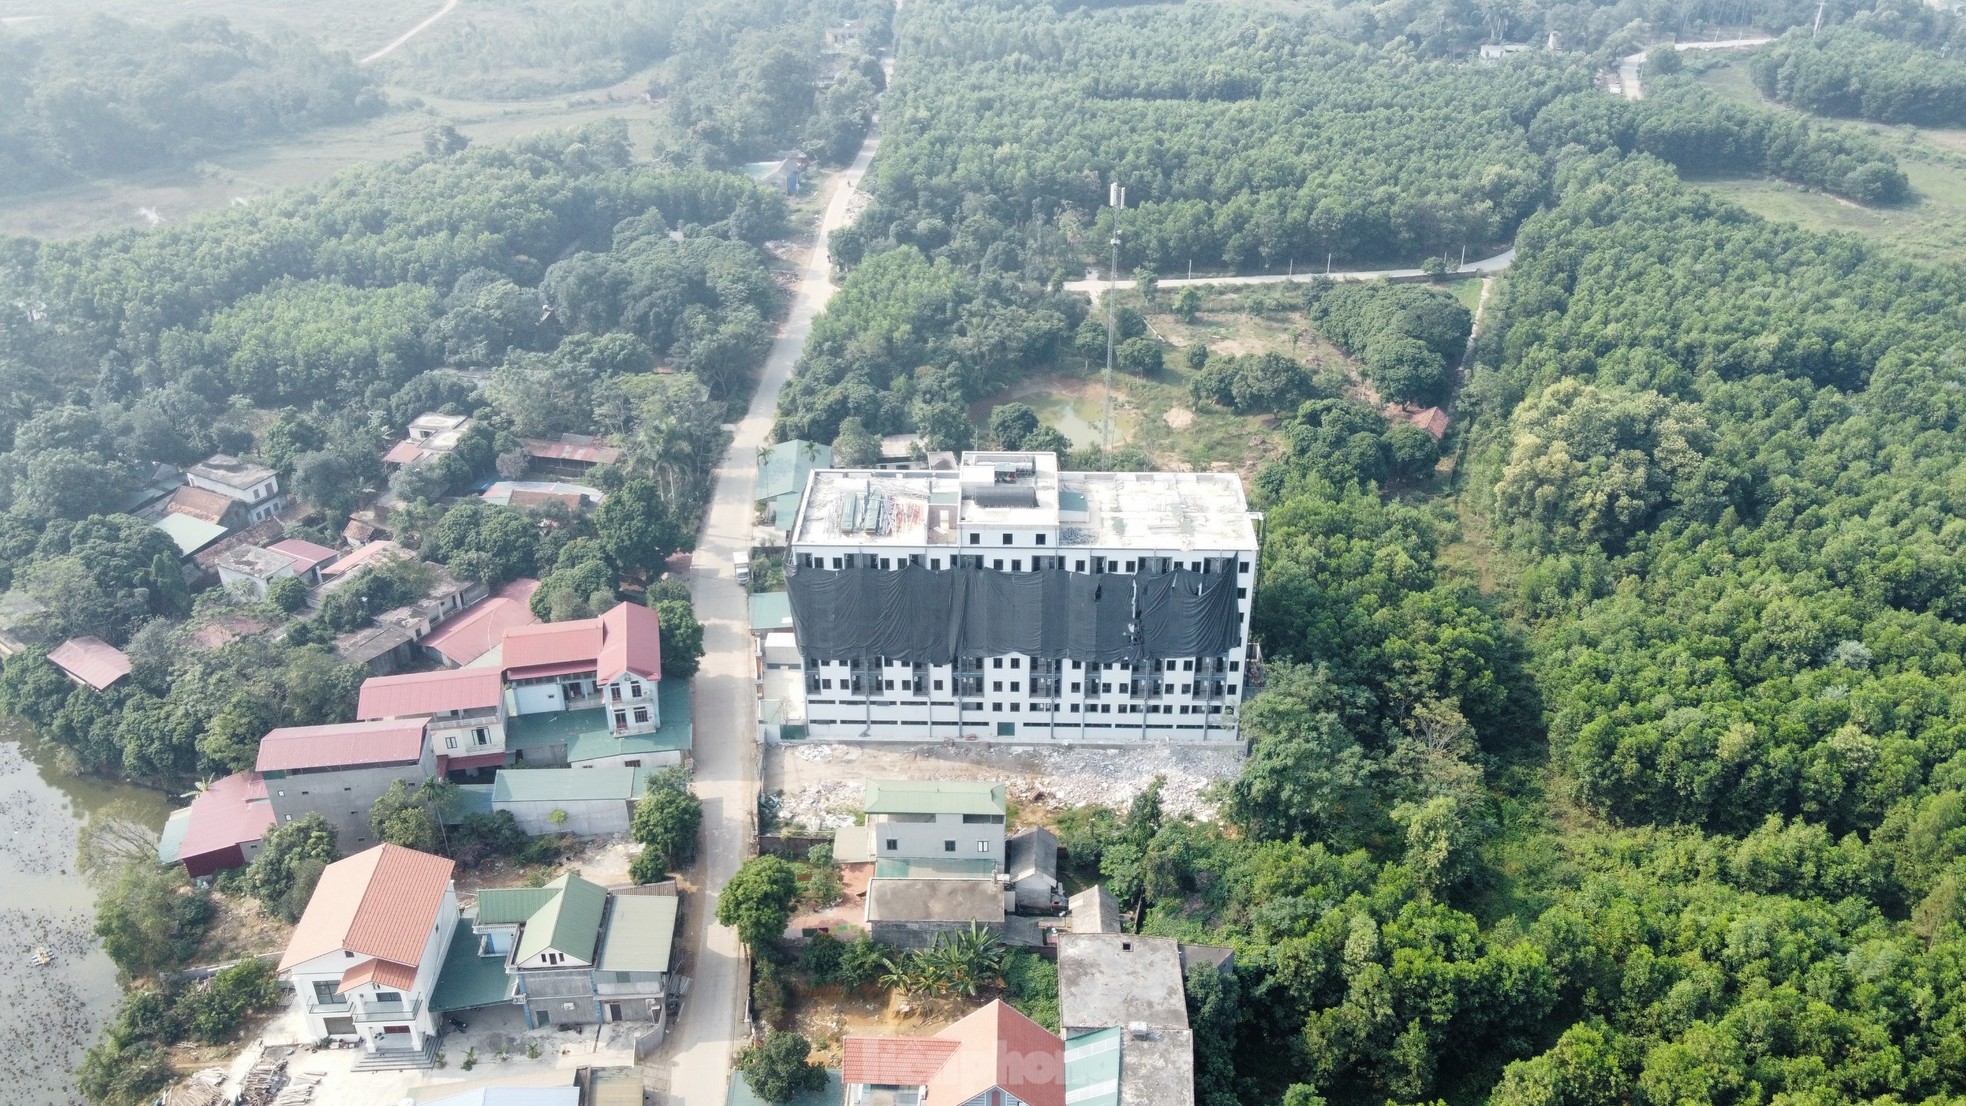 Thủ phủ chung cư mini sai phép ở ngoại thành Hà Nội ì ạch xử lý sai phạm - Ảnh 2.